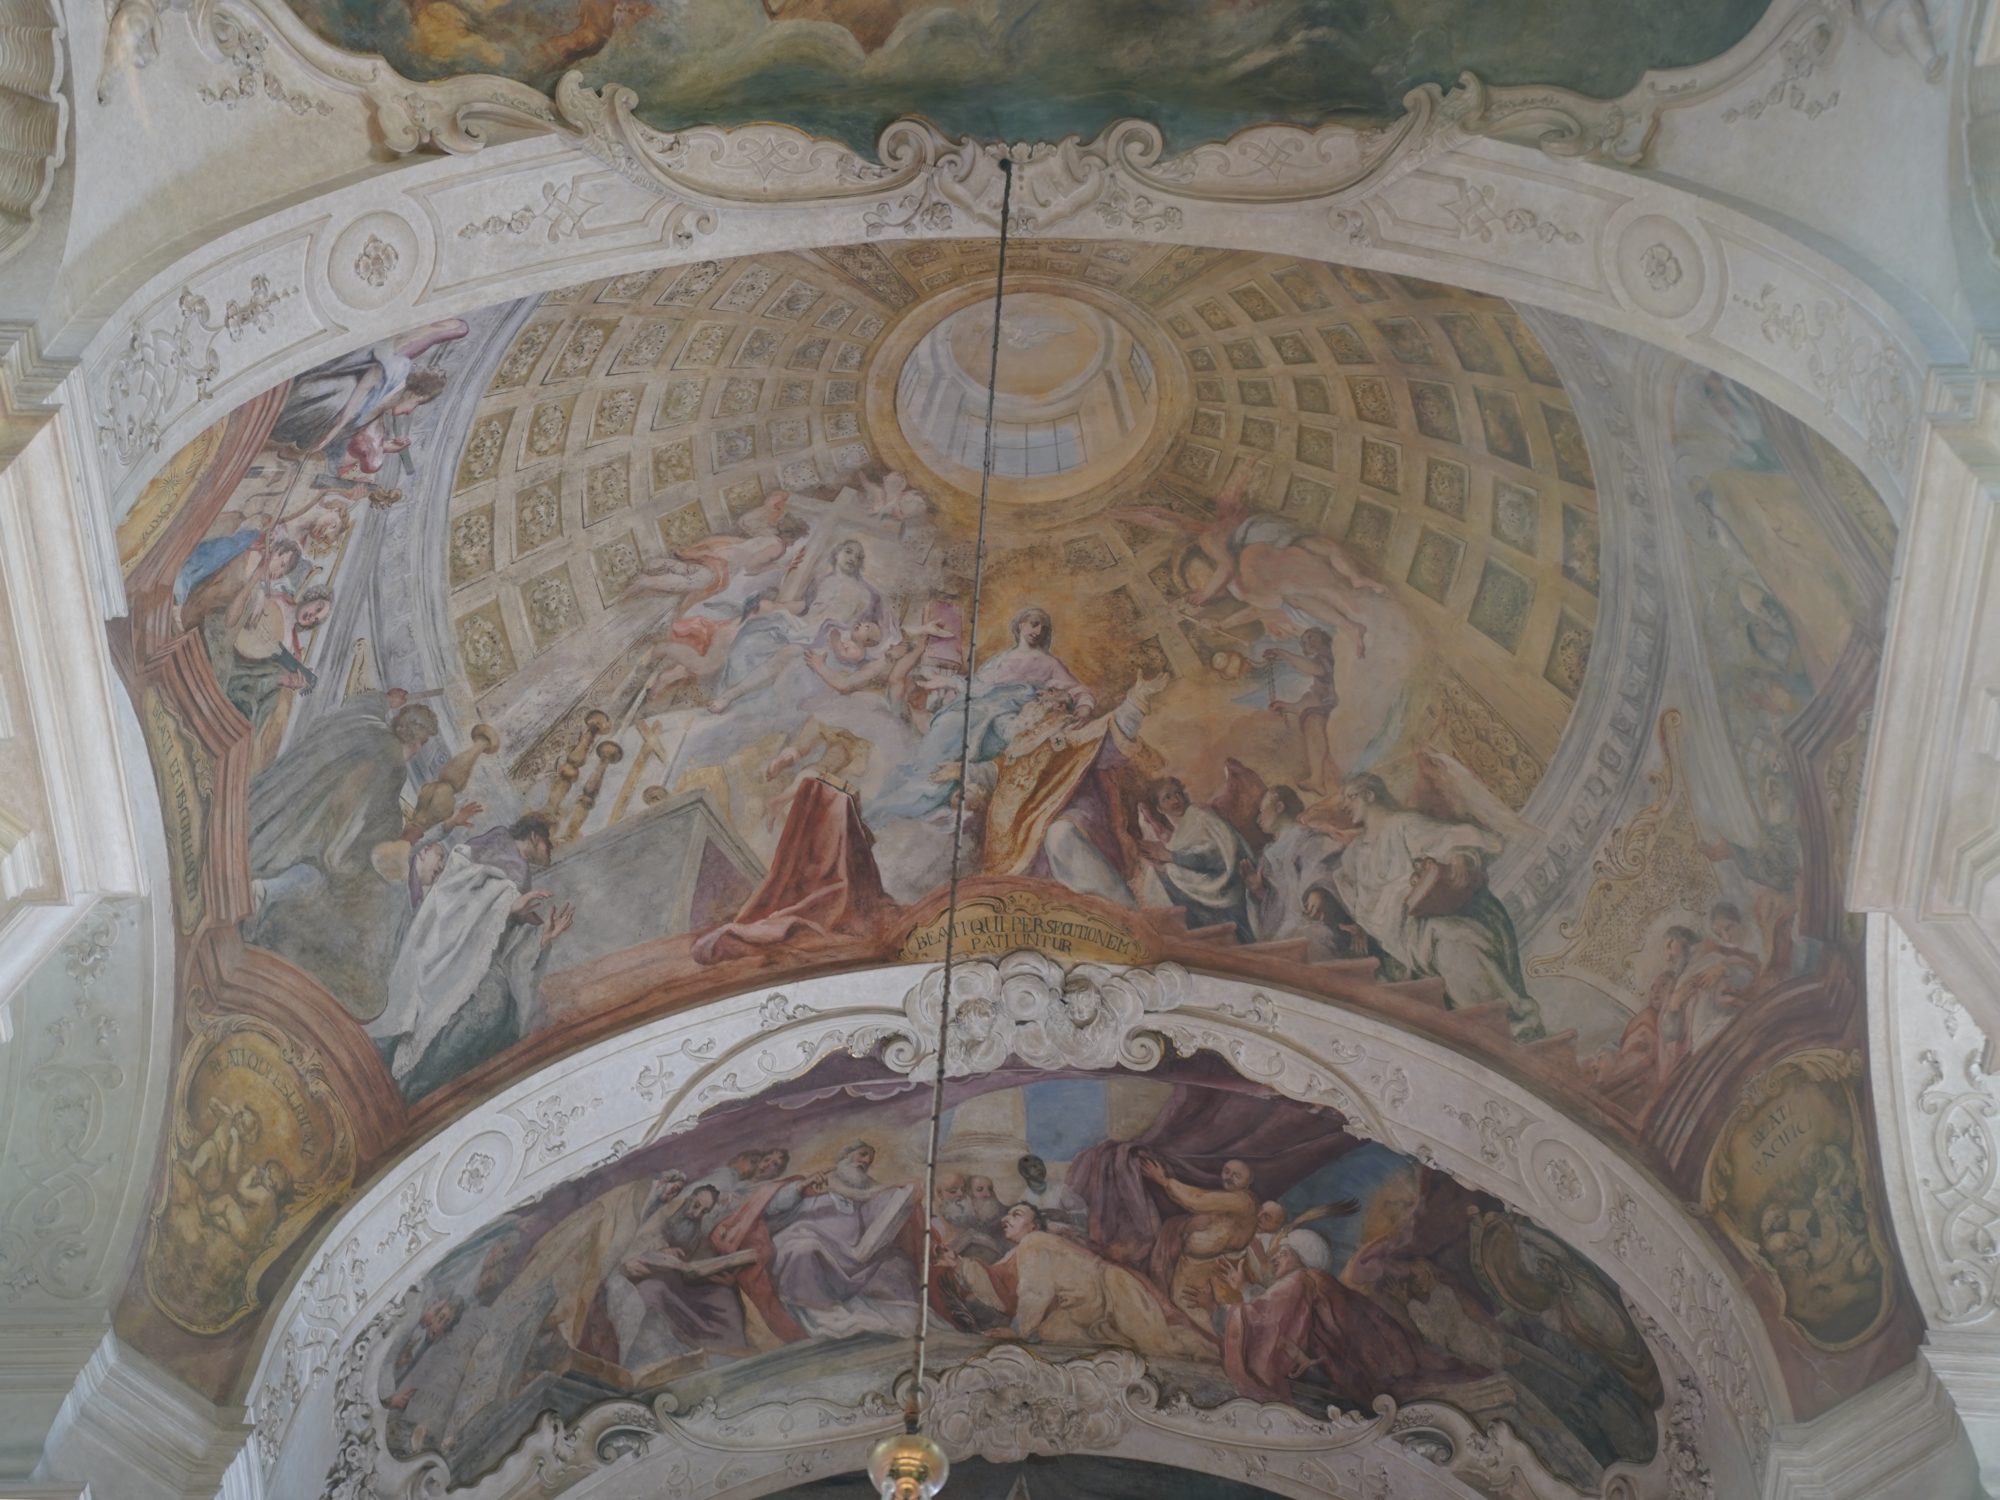 St. Nicholas' Church ceiling